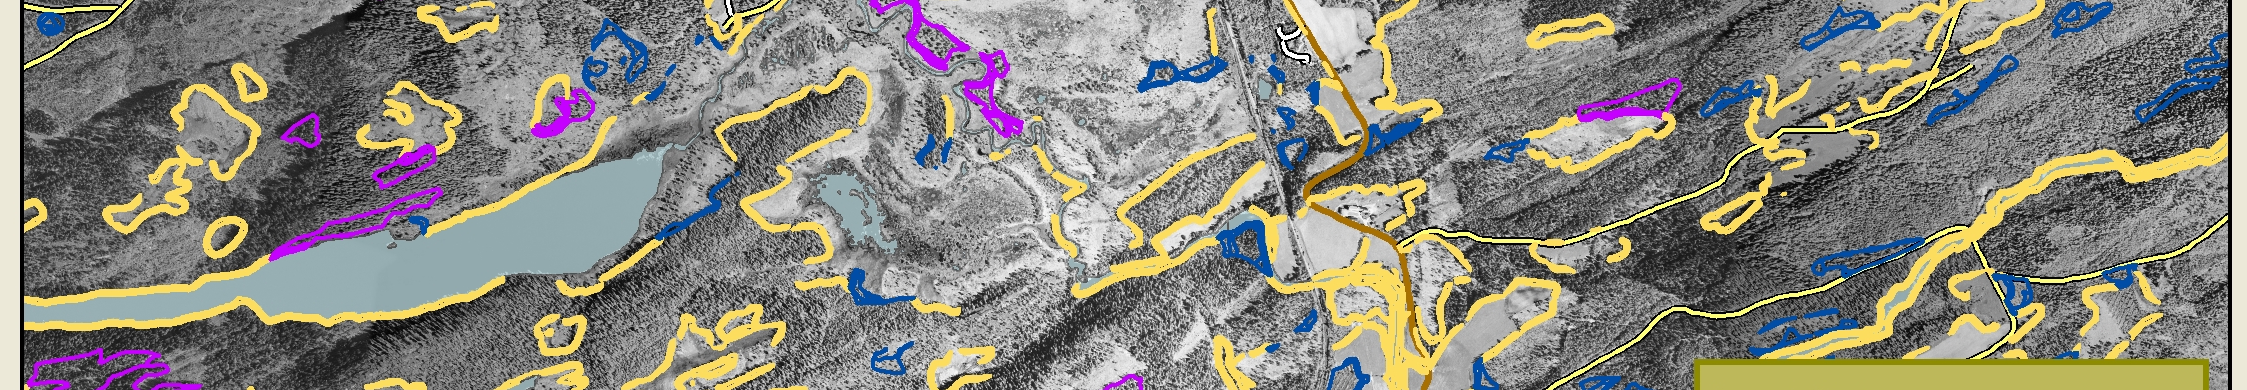 Bilde 3: Visning av BVO arealer i original har kartet en målestokk 1:30000 Bilde 4: